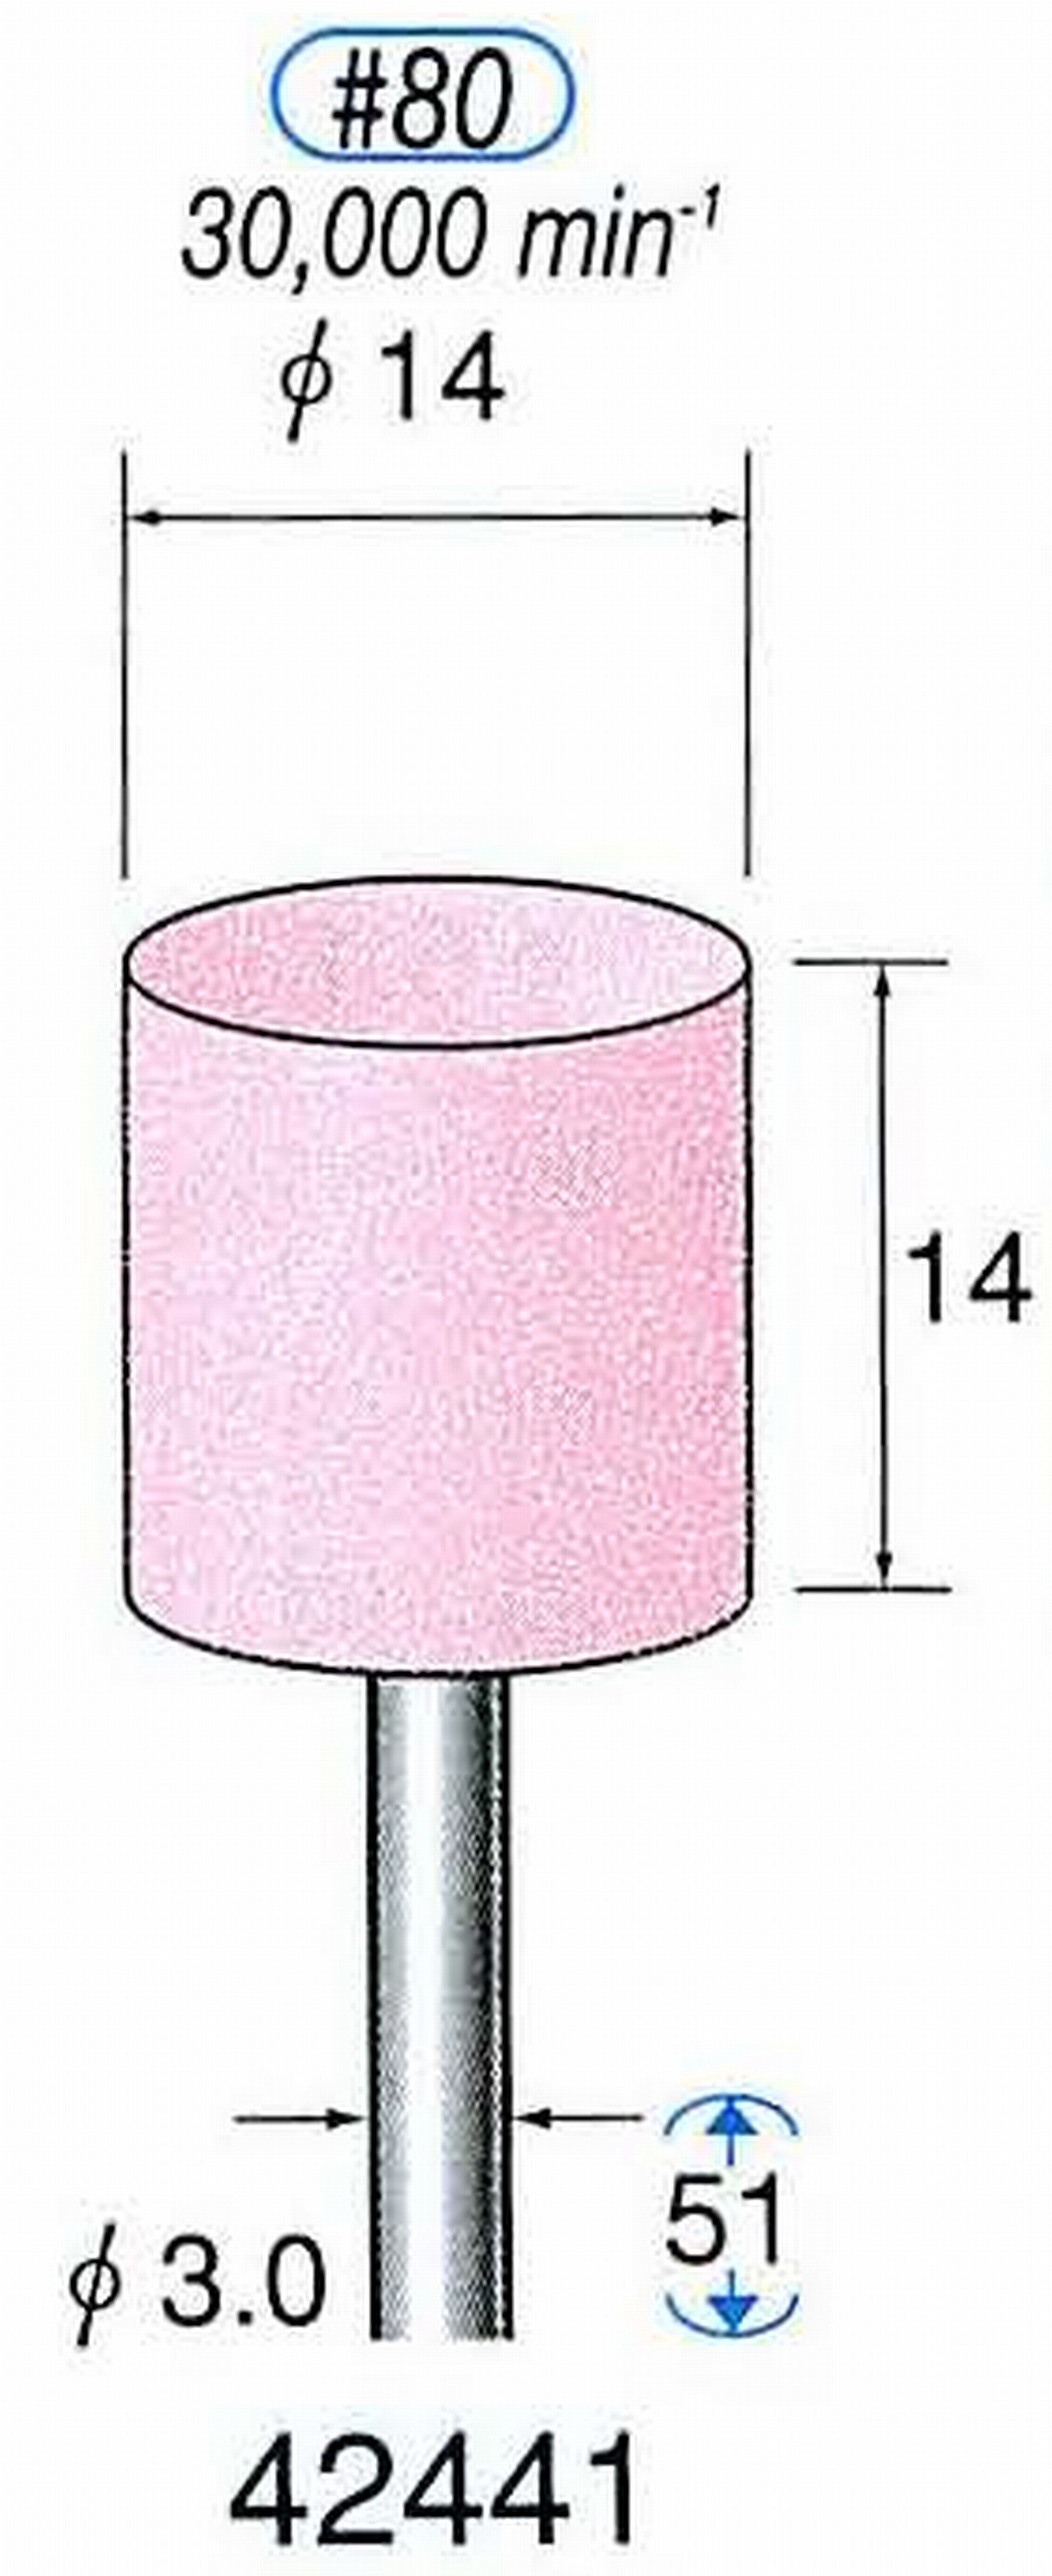 ナカニシ/NAKANISHI 軸付砥石(WA砥粒) 一般研削用 軸径(シャンク) φ3.0mm 42441